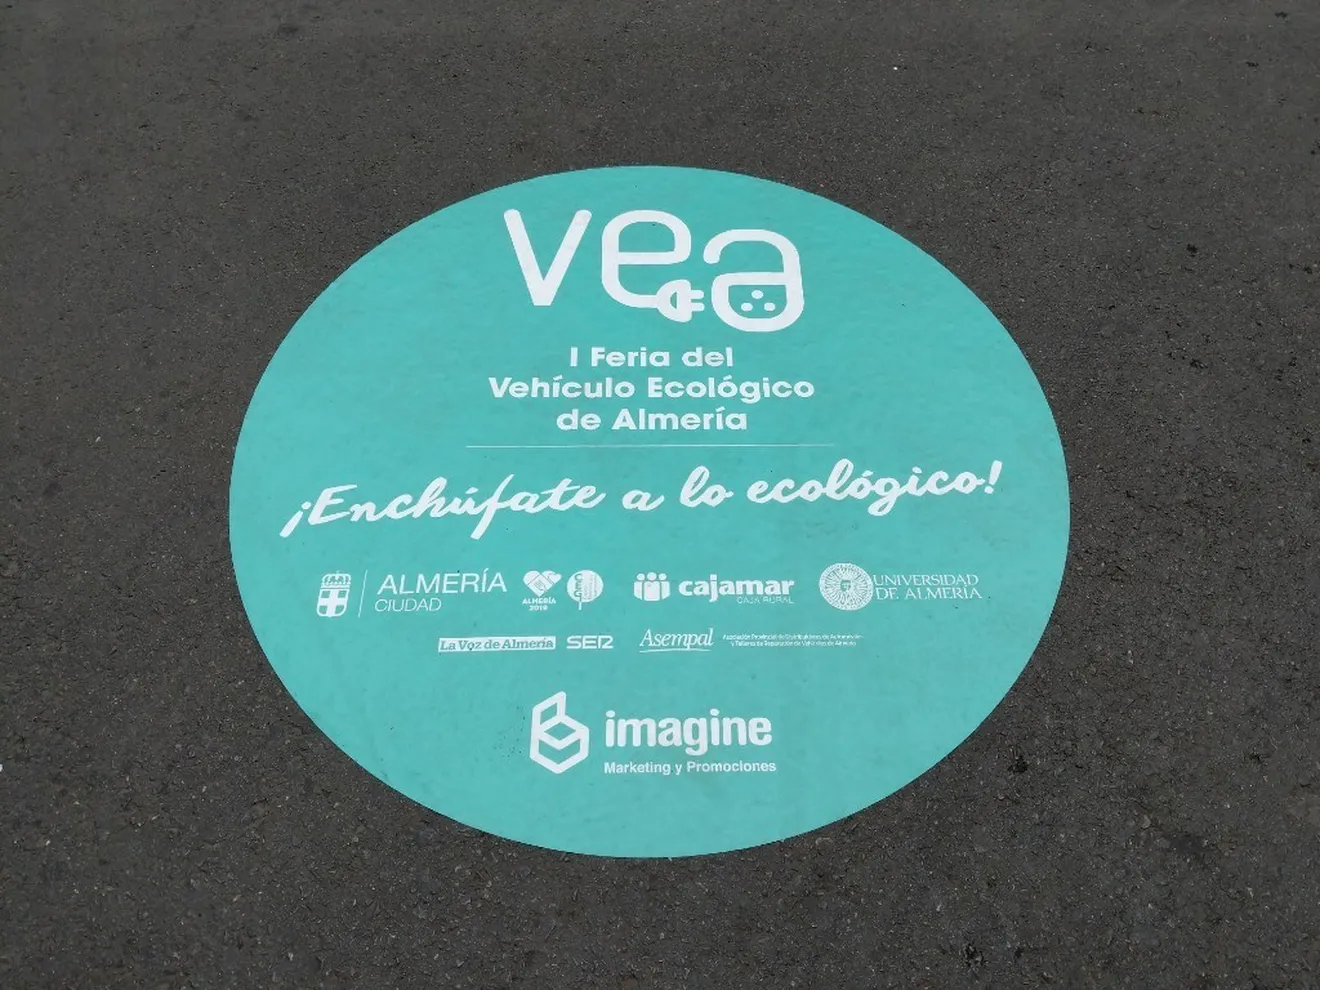 Visitamos la Primera Feria del Vehículo Ecológico de Almería